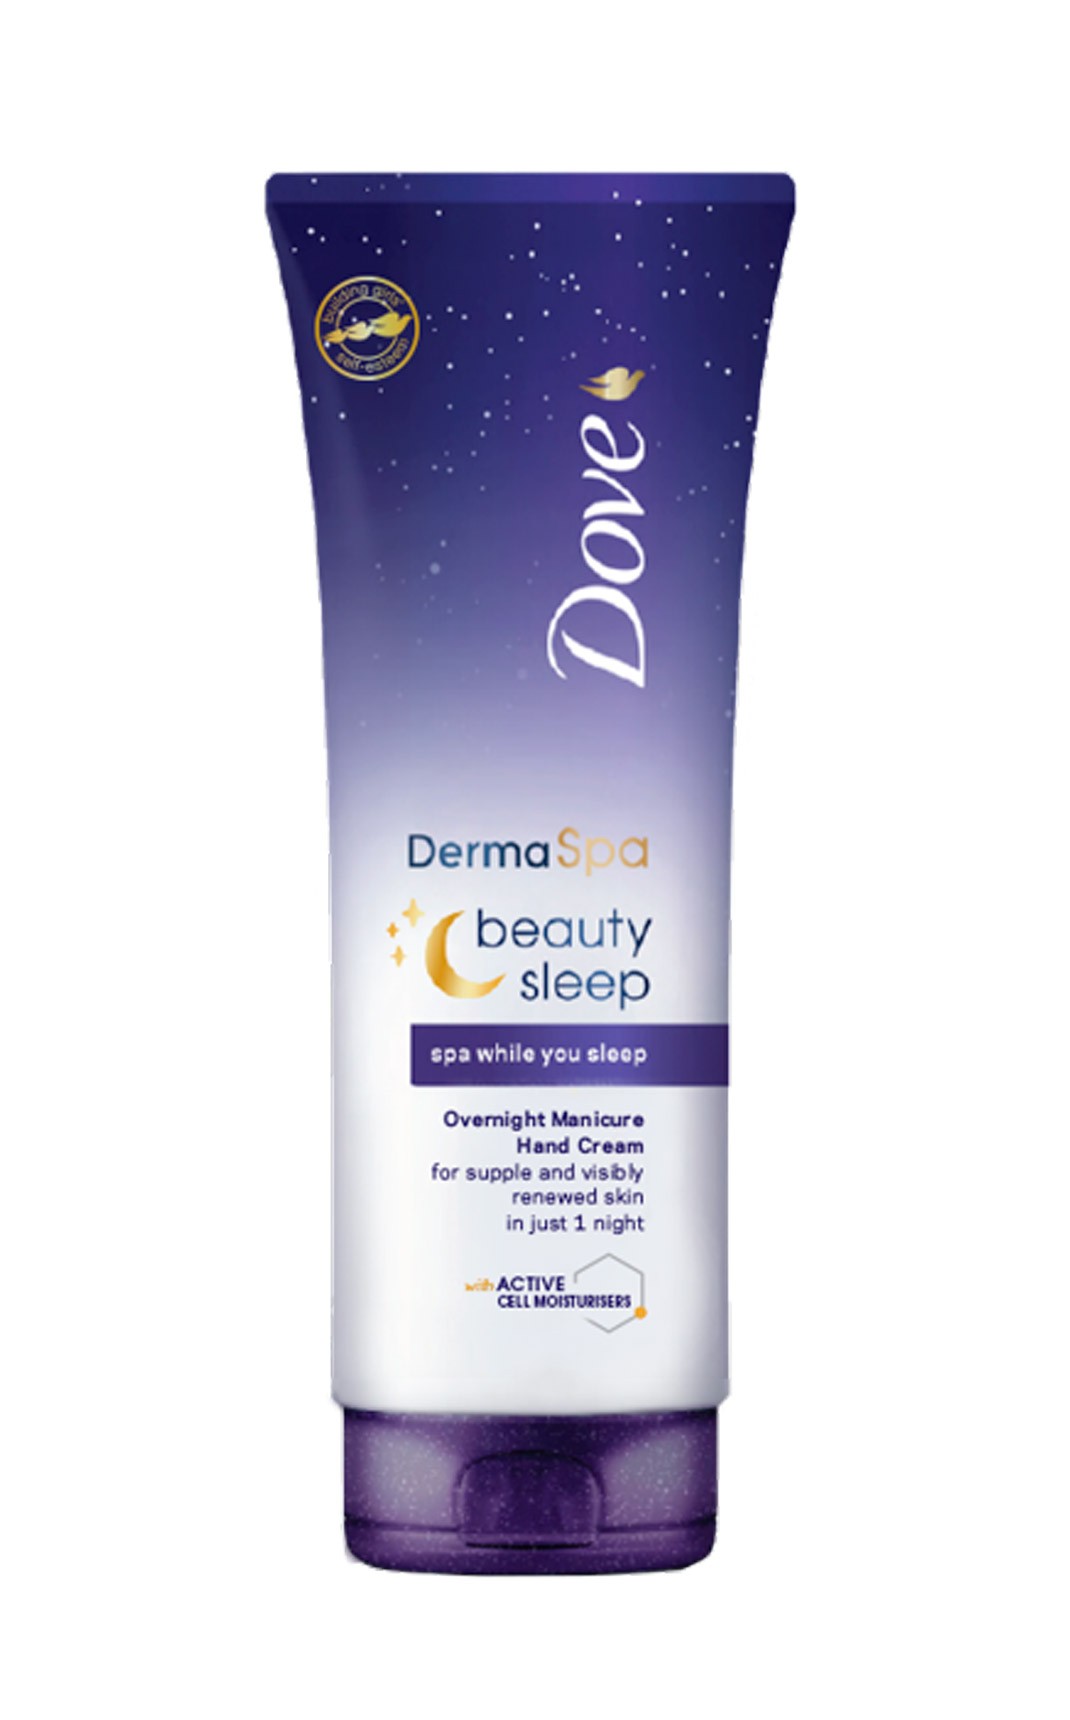 Crema-de-manos-DermaSpa-Beauty-Sleep-2,99